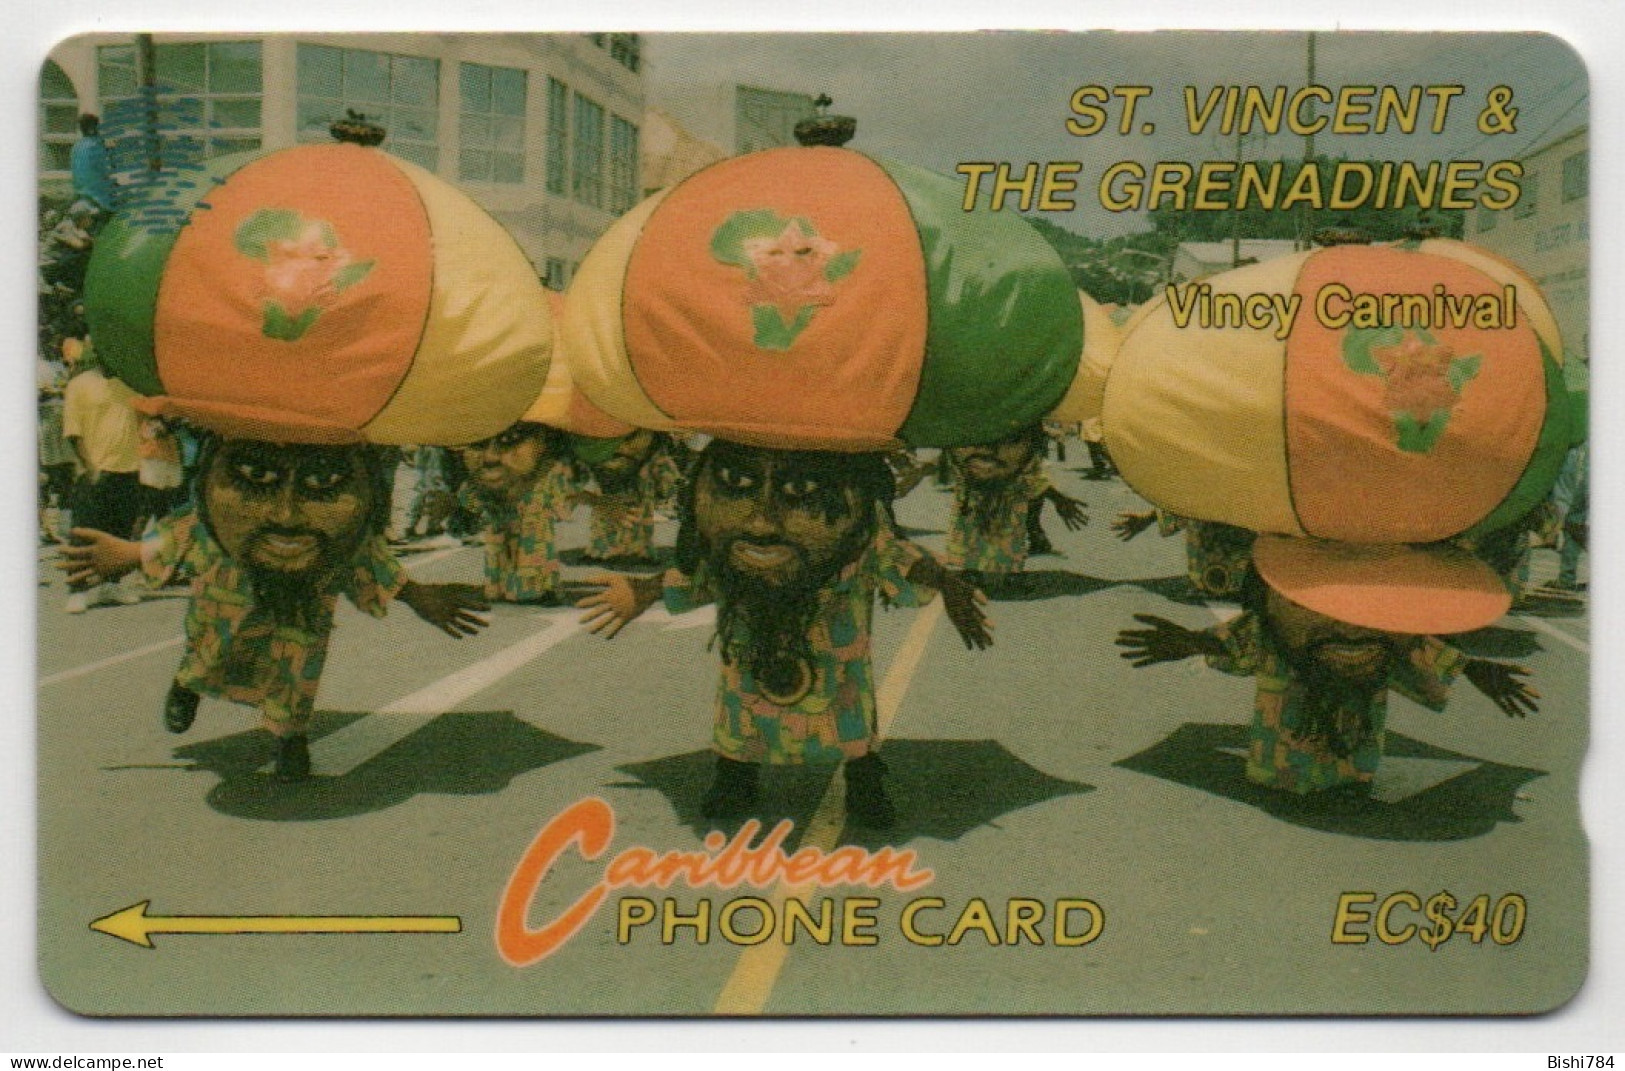 St. Vincent & The Grenadines - Vincy Carnival - 8CSVD - St. Vincent & The Grenadines